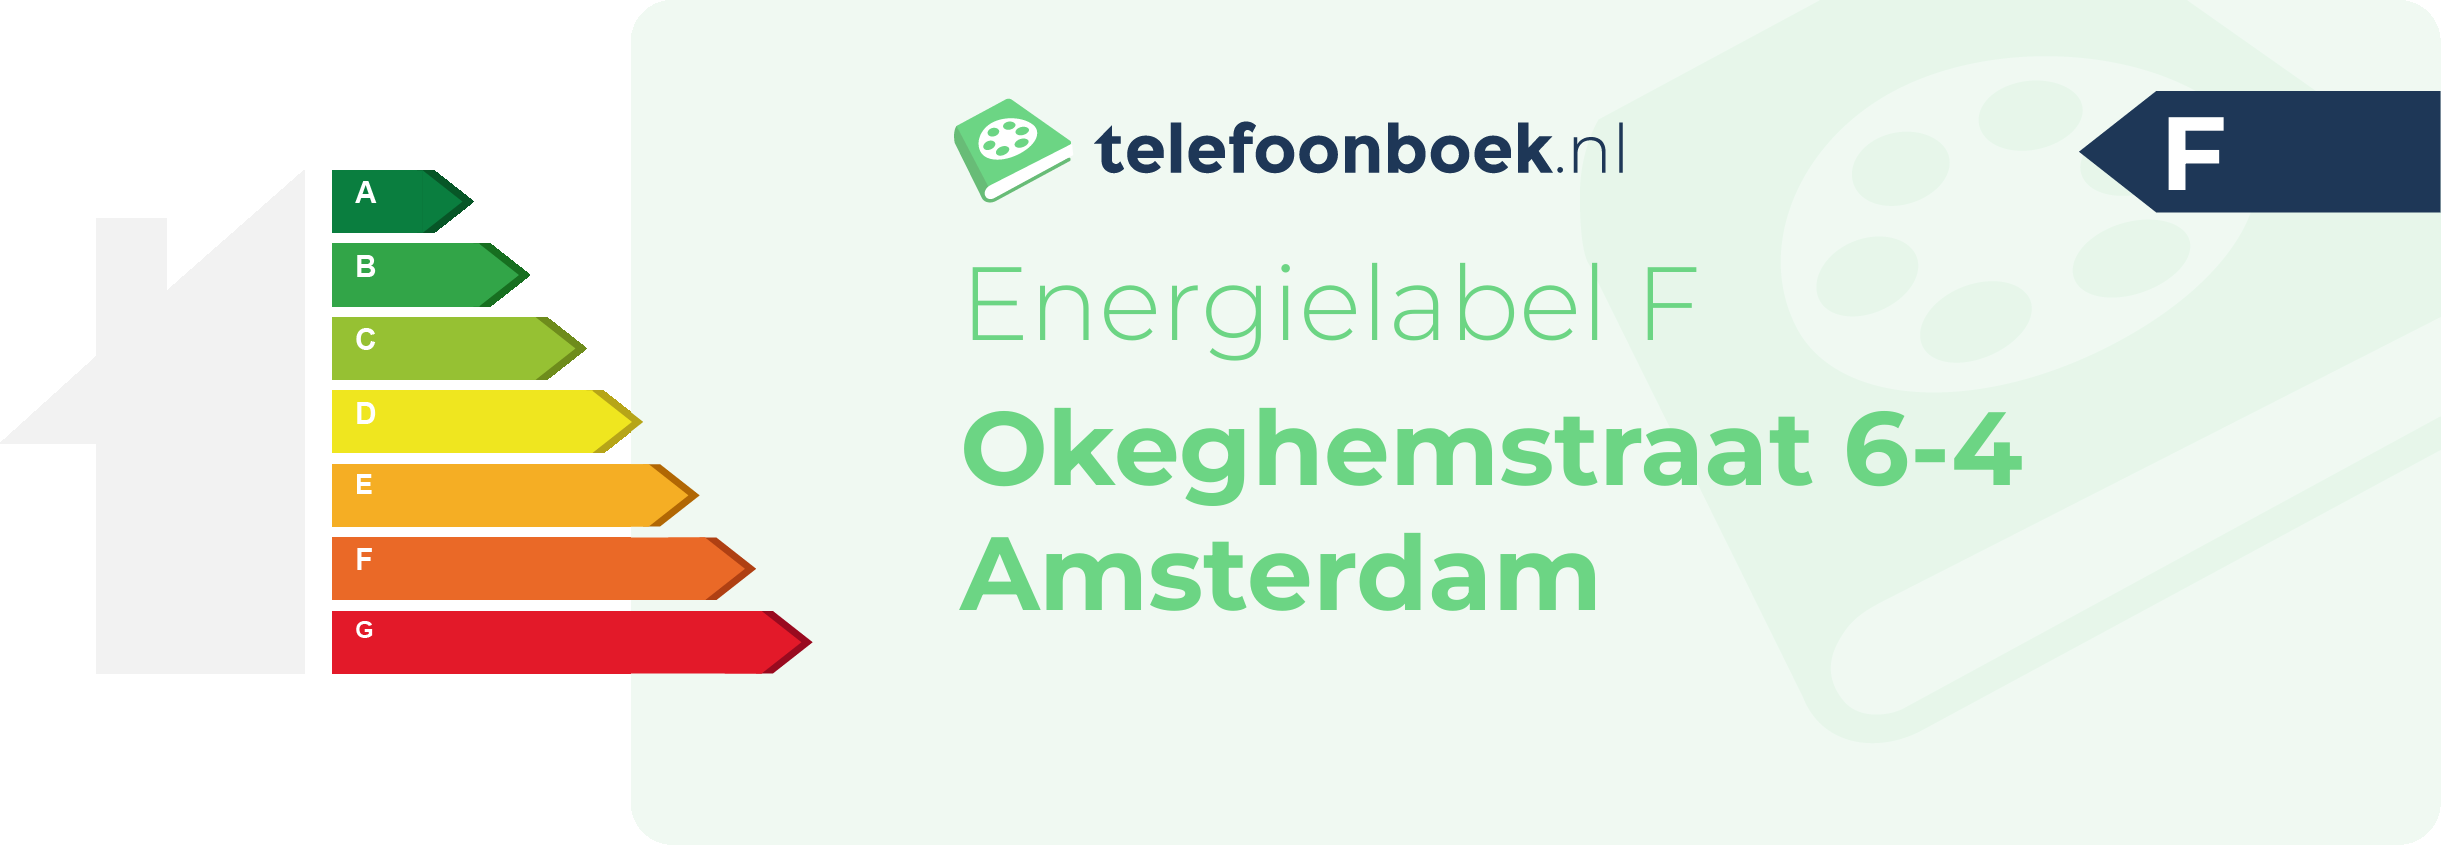 Energielabel Okeghemstraat 6-4 Amsterdam